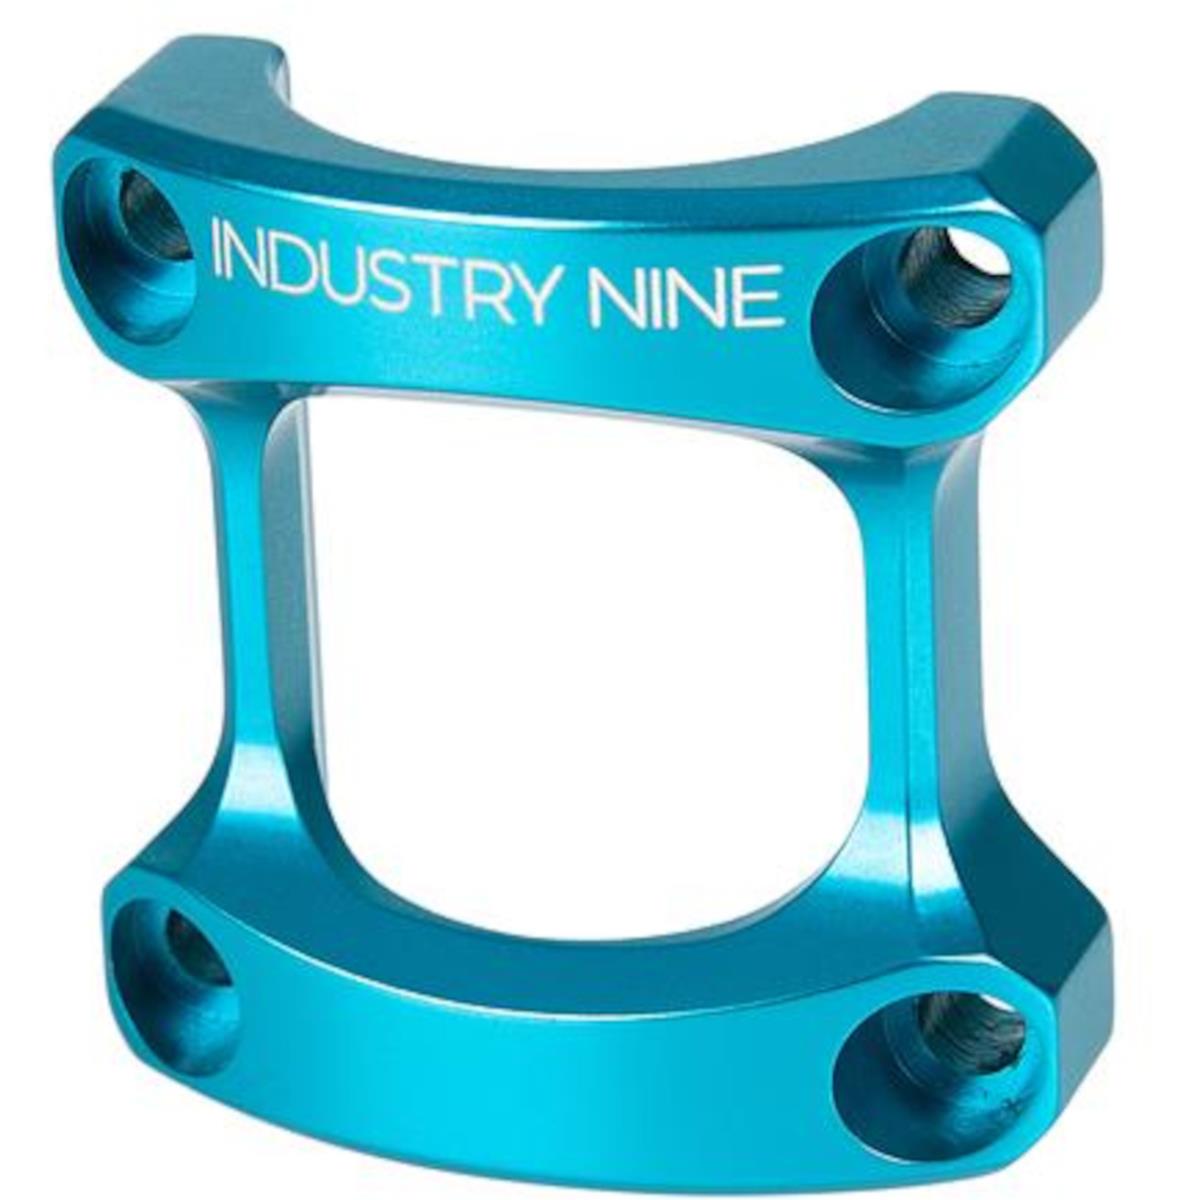 Industry Nine Plaque de potence  pour A318 Potence, Turquoise